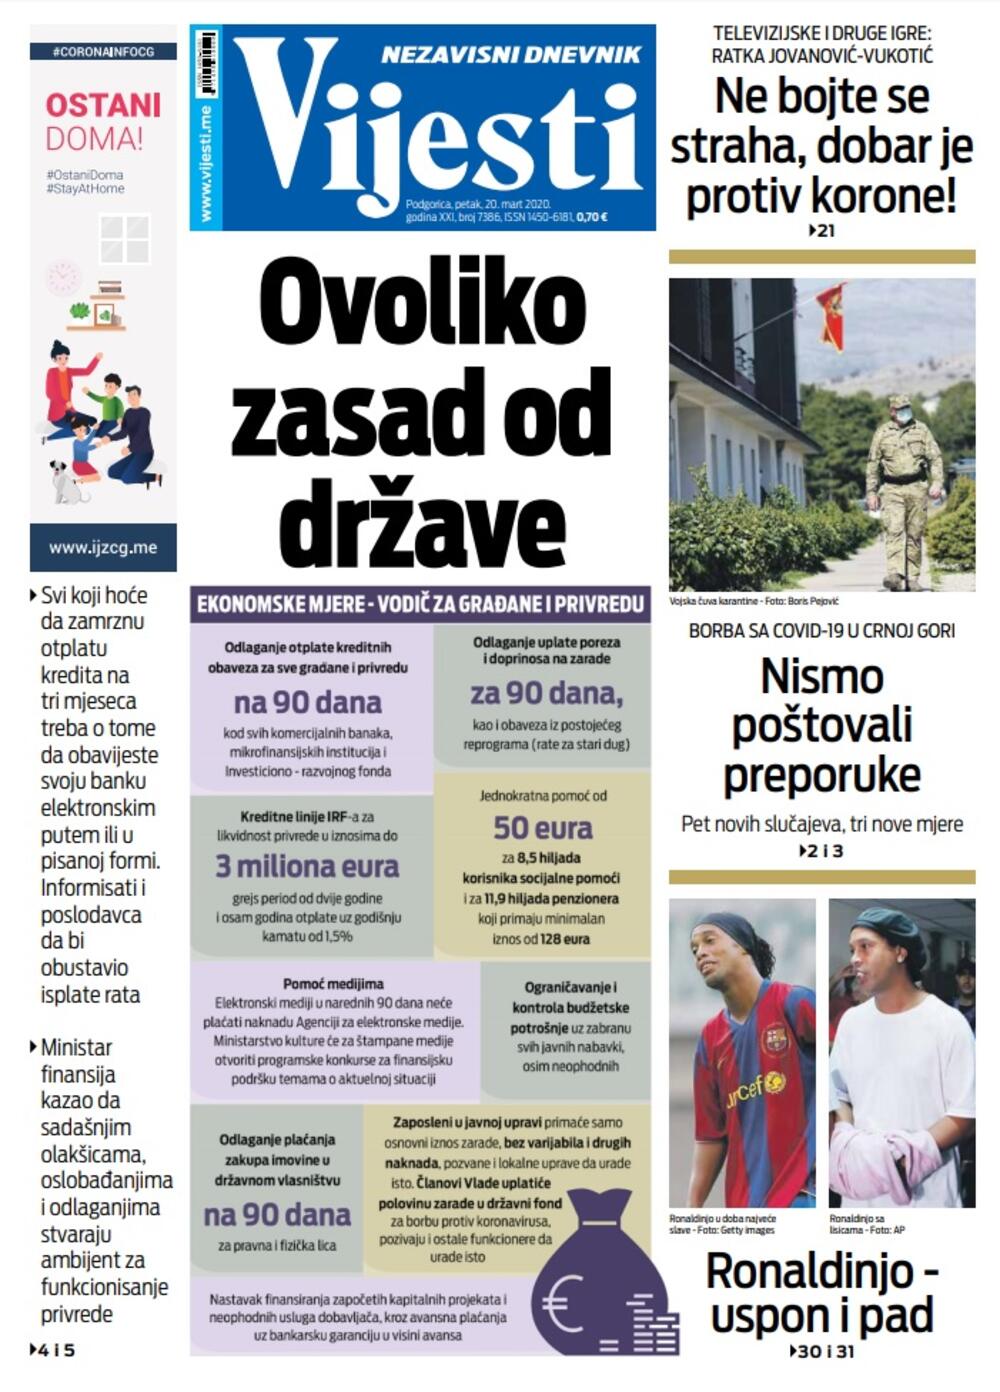 Naslovna strana "Vijesti" za 20. mart 2020. godine, Foto: Vijesti